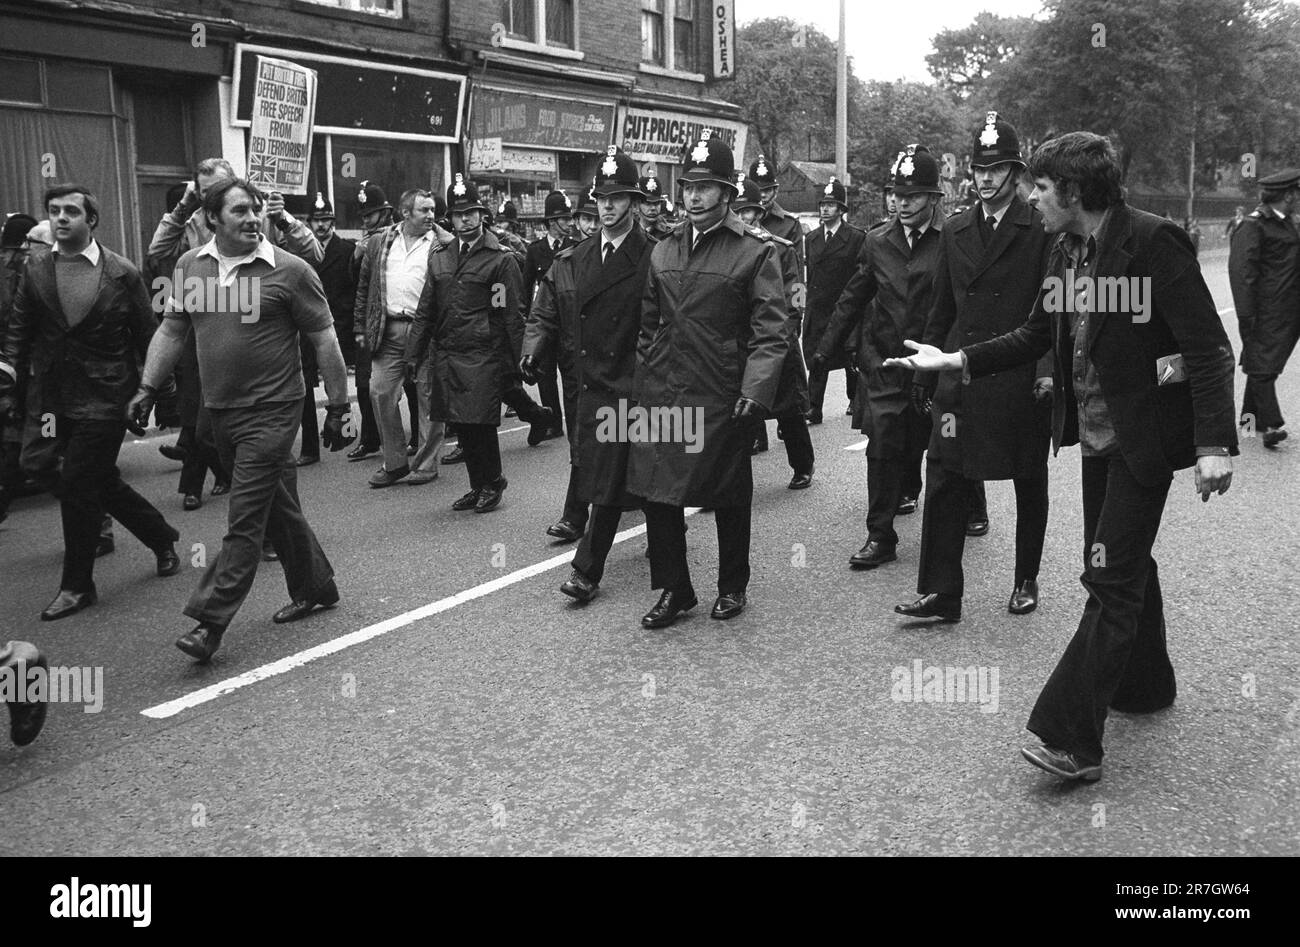 Le Front National marche à travers une banlieue de Manchester, un manifestant de gauche harangue le NF qui sont protégés par la police. Manchester, Angleterre octobre 8th 1977. 1970S ROYAUME-UNI HOMER SYKES Banque D'Images